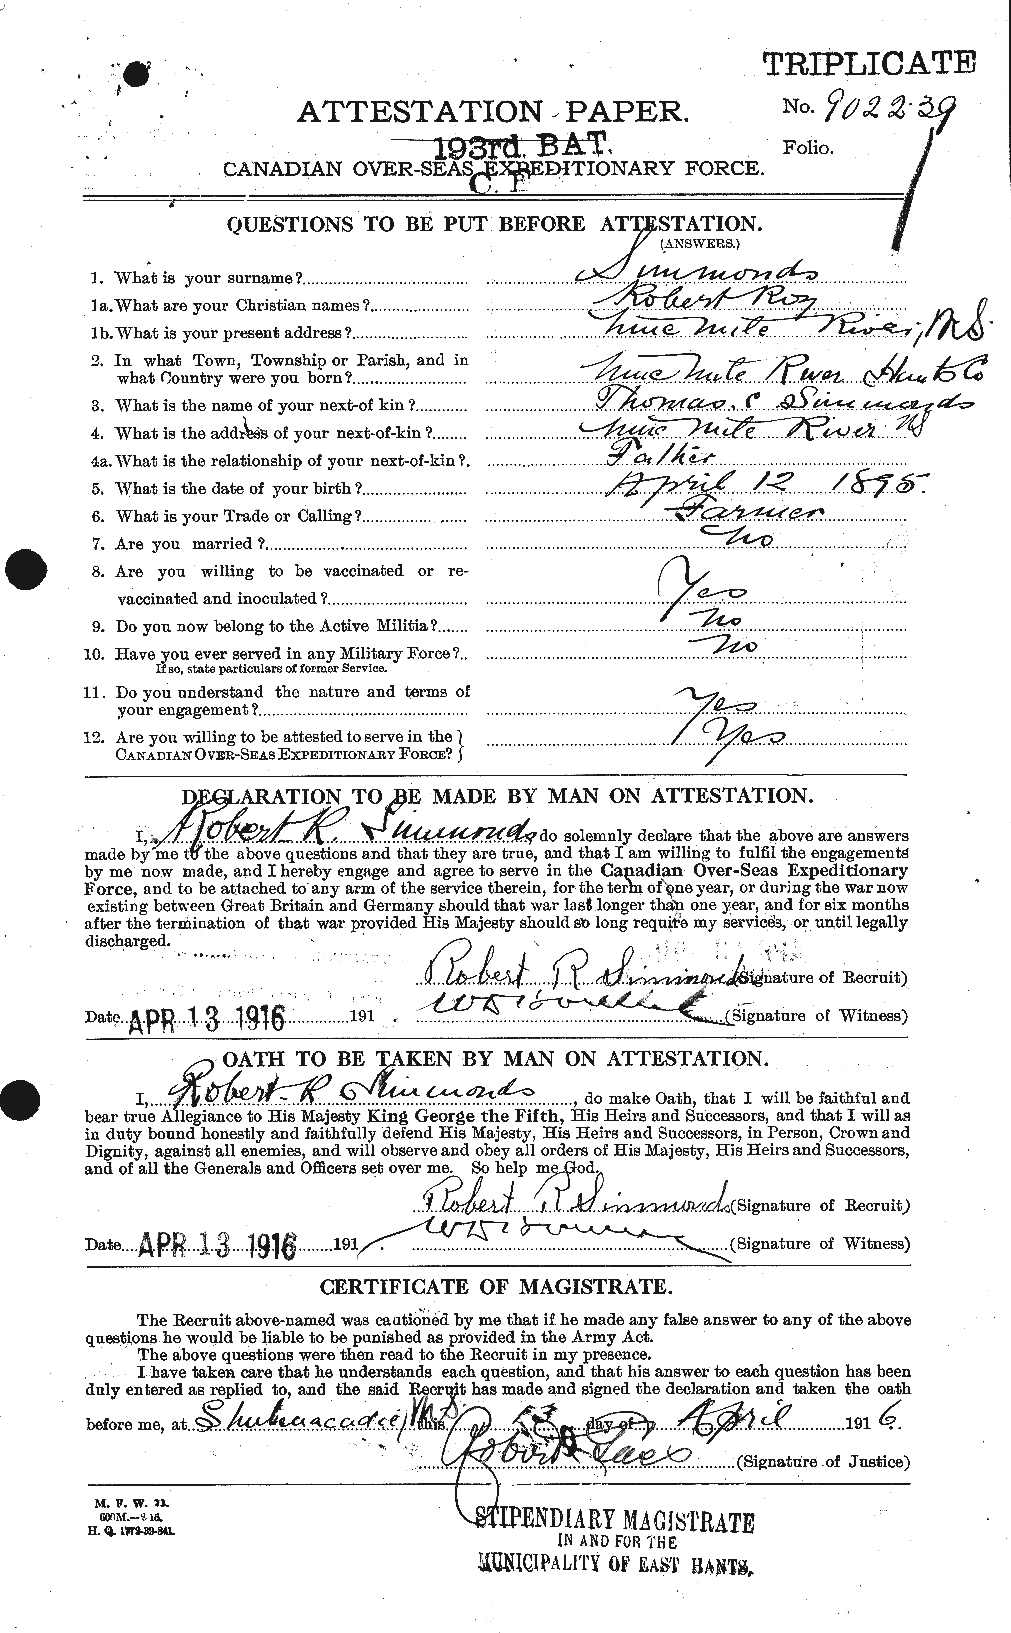 Dossiers du Personnel de la Première Guerre mondiale - CEC 099419a